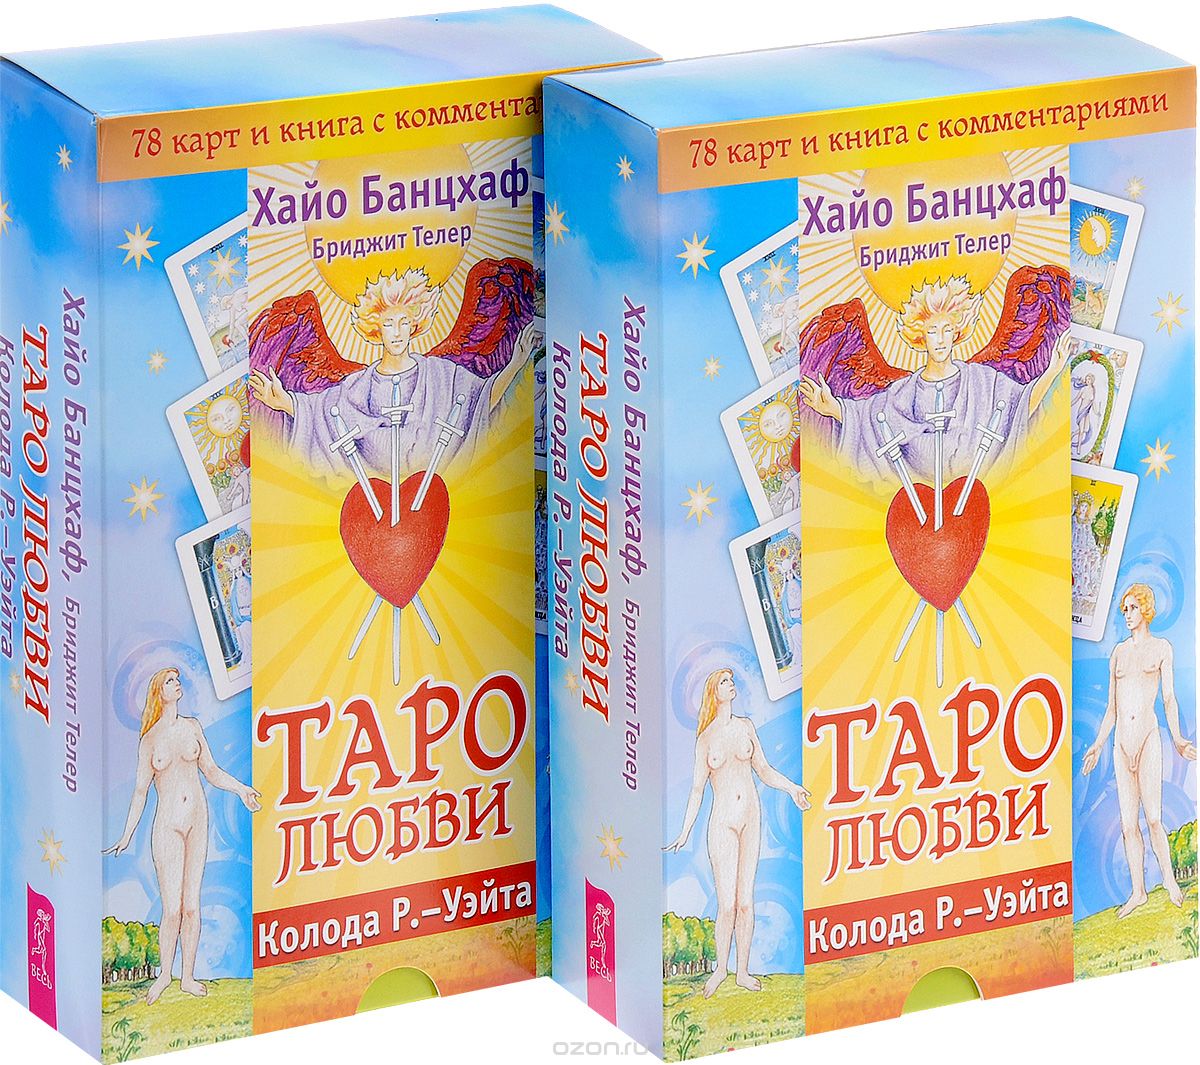 Таро любви (комплект из 2 книг + 2 колоды карт), Хайо Банцхаф, Бриджит Телер